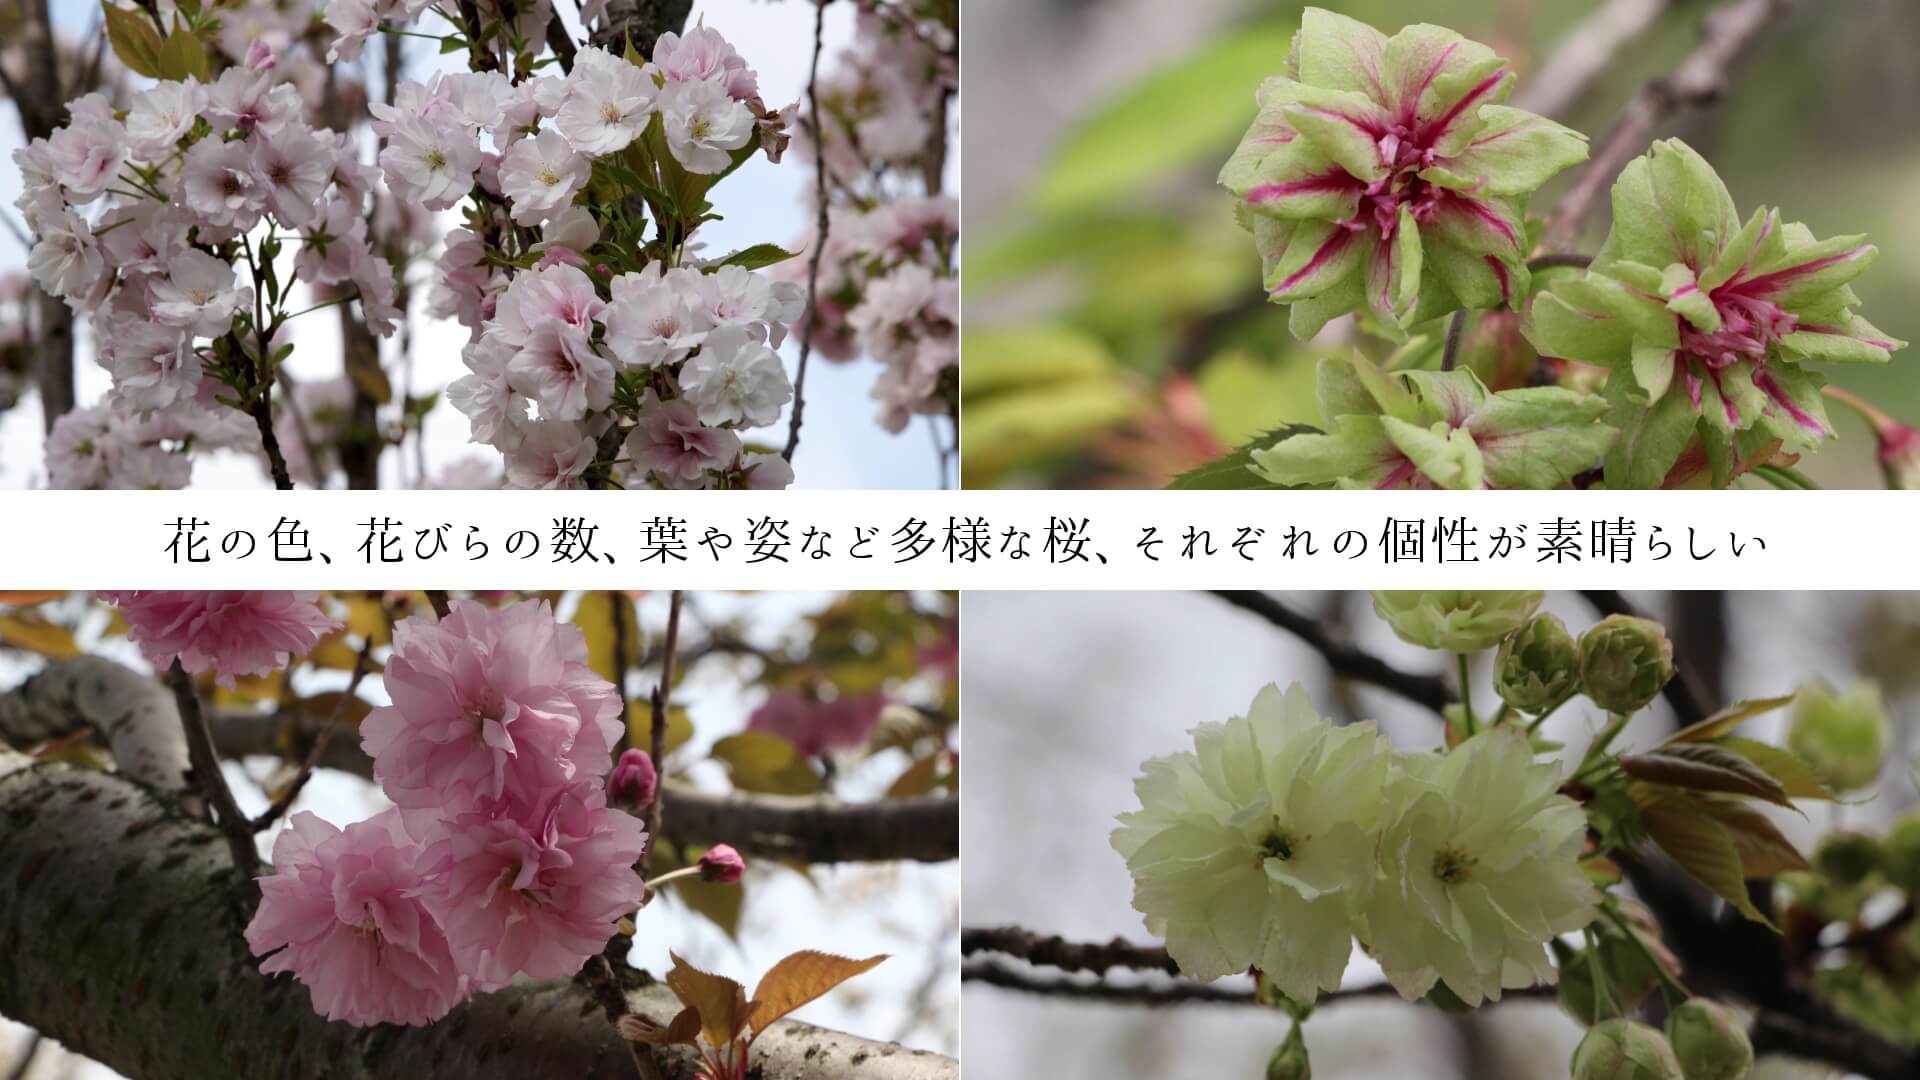 花の色、花びらの数、葉や姿など多様な桜、それぞれの個性が素晴らしい